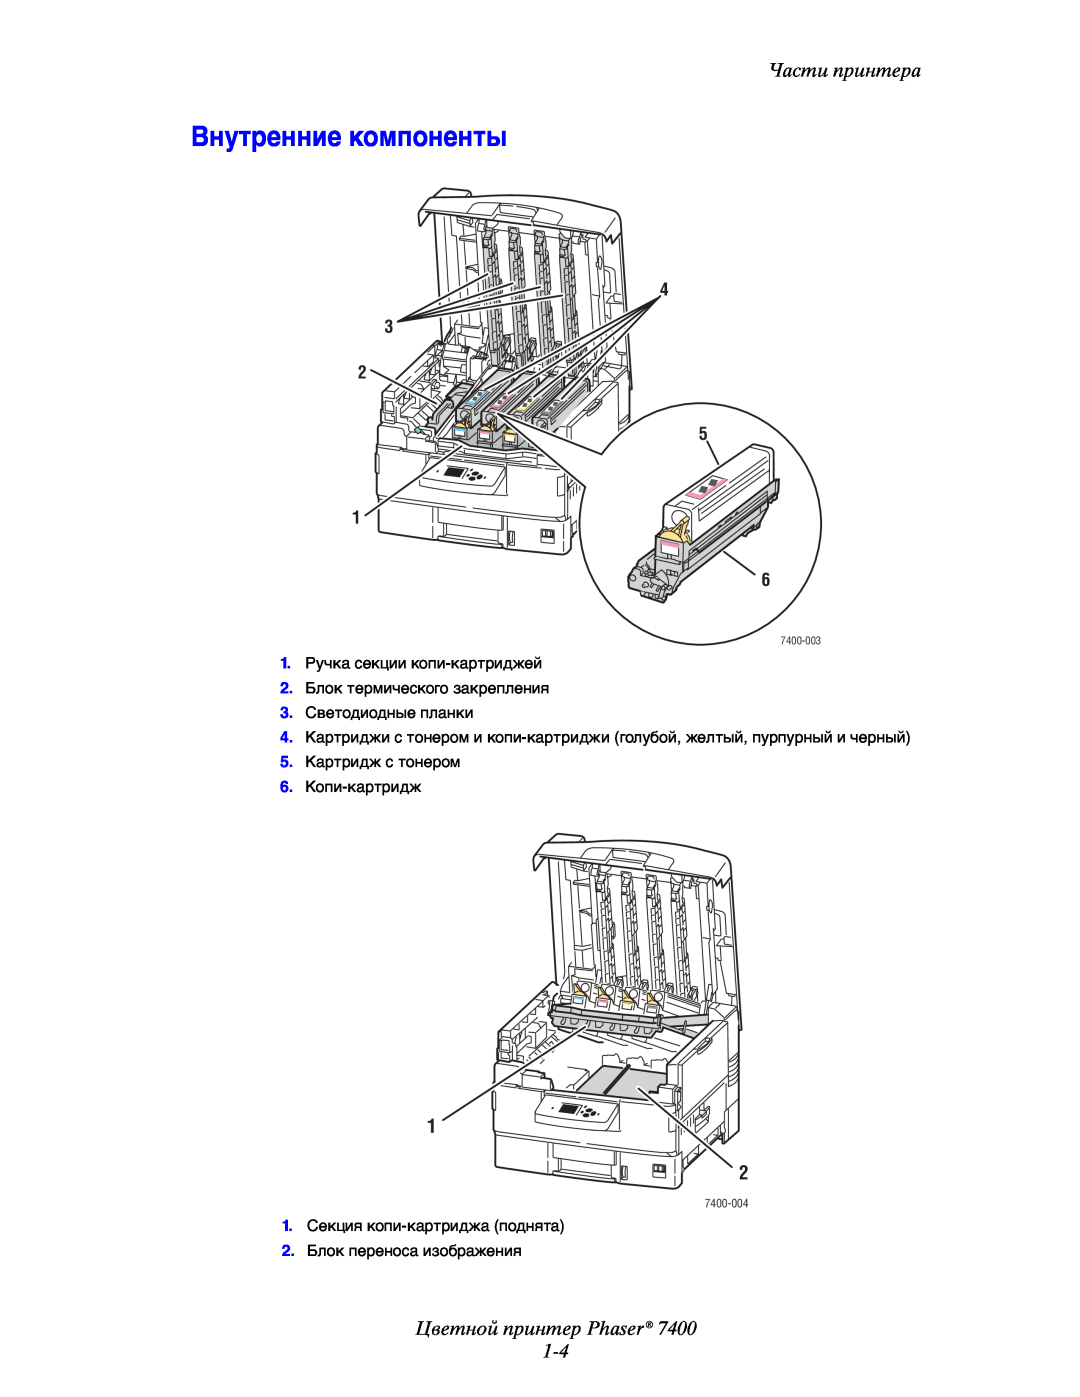 Xerox manual Внутренние компоненты, Цветной принтер Phaser 1-4, Части принтера, 4 3 2 5 1 6, 7400-004, 7400-003 